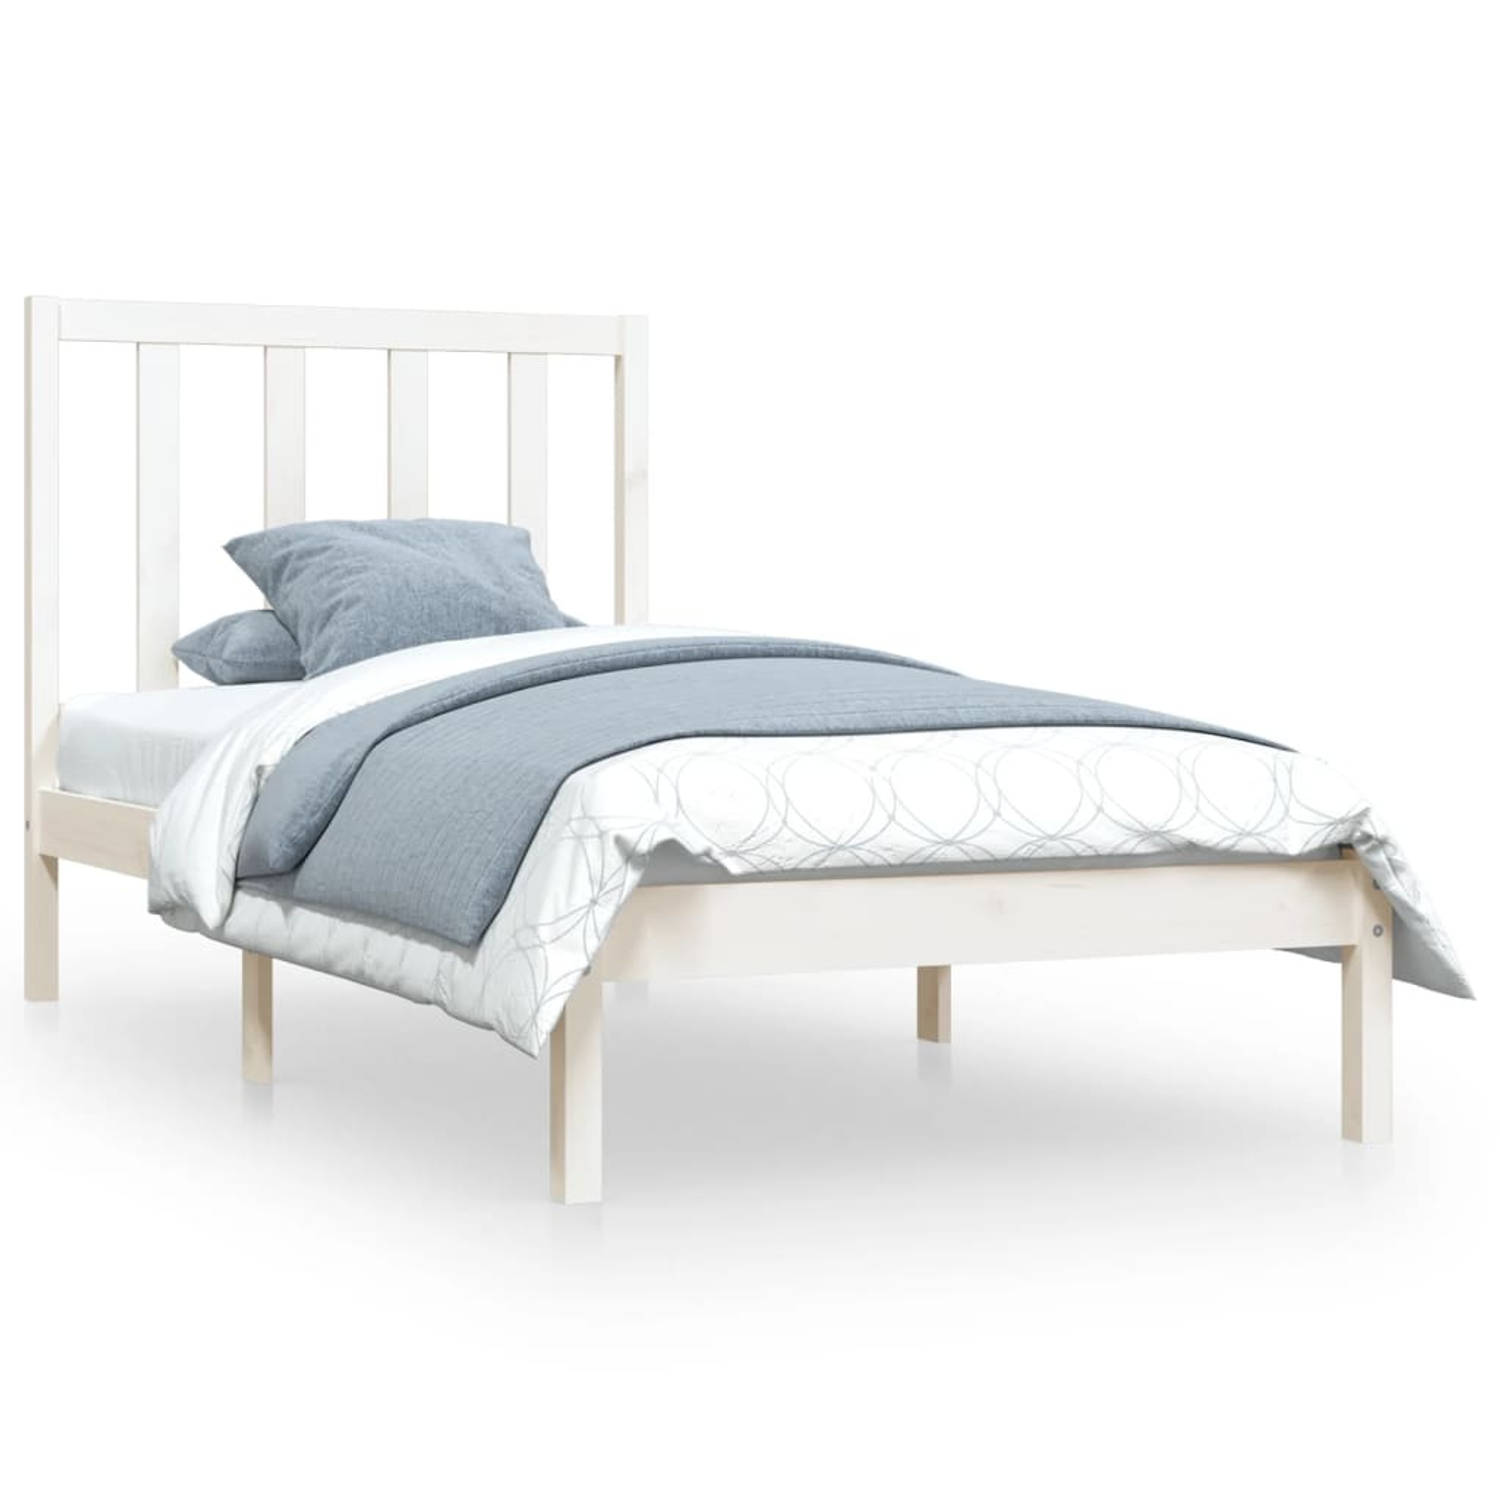 The Living Store Bedframe massief grenenhout wit 90x200 cm - Bedframe - Bedframes - Bed - Bedbodem - Ledikant - Bed Frame - Massief Houten Bedframe - Slaapmeubel - Bedden - Bedbode